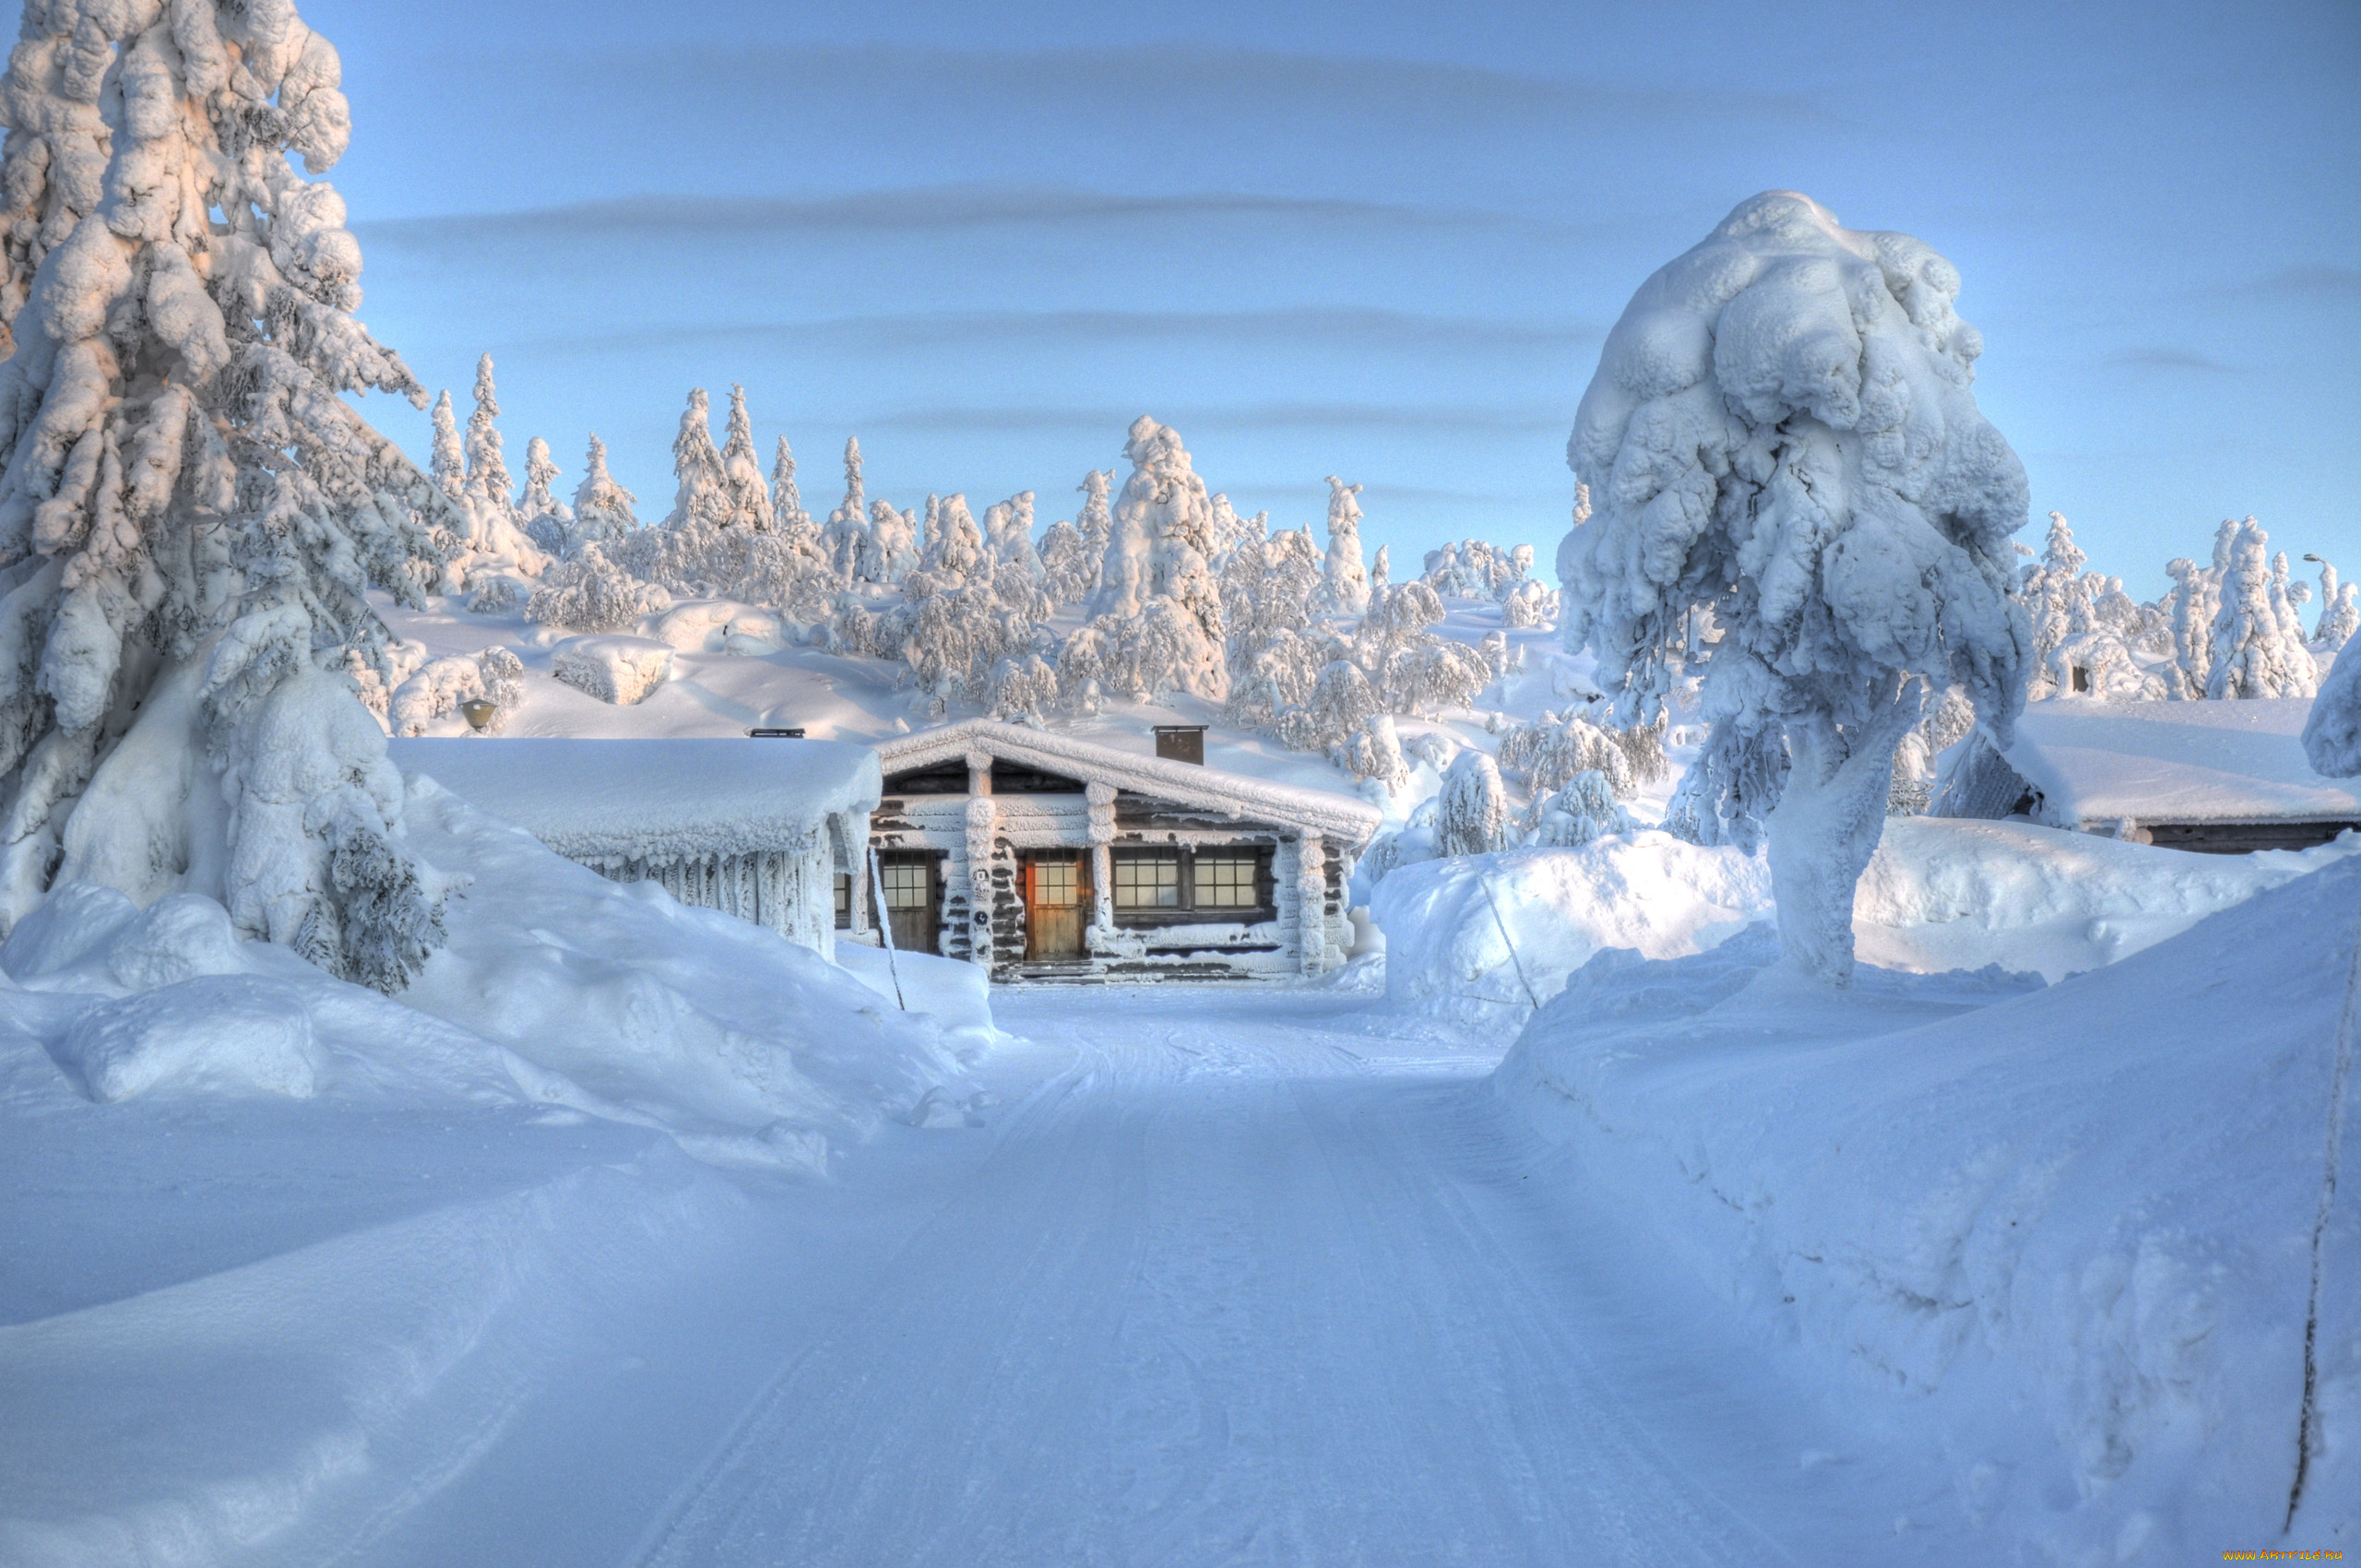 Snow is beautiful. Зимний пейзаж. Зимний домик. Заснеженный домик. Снежный пейзаж.